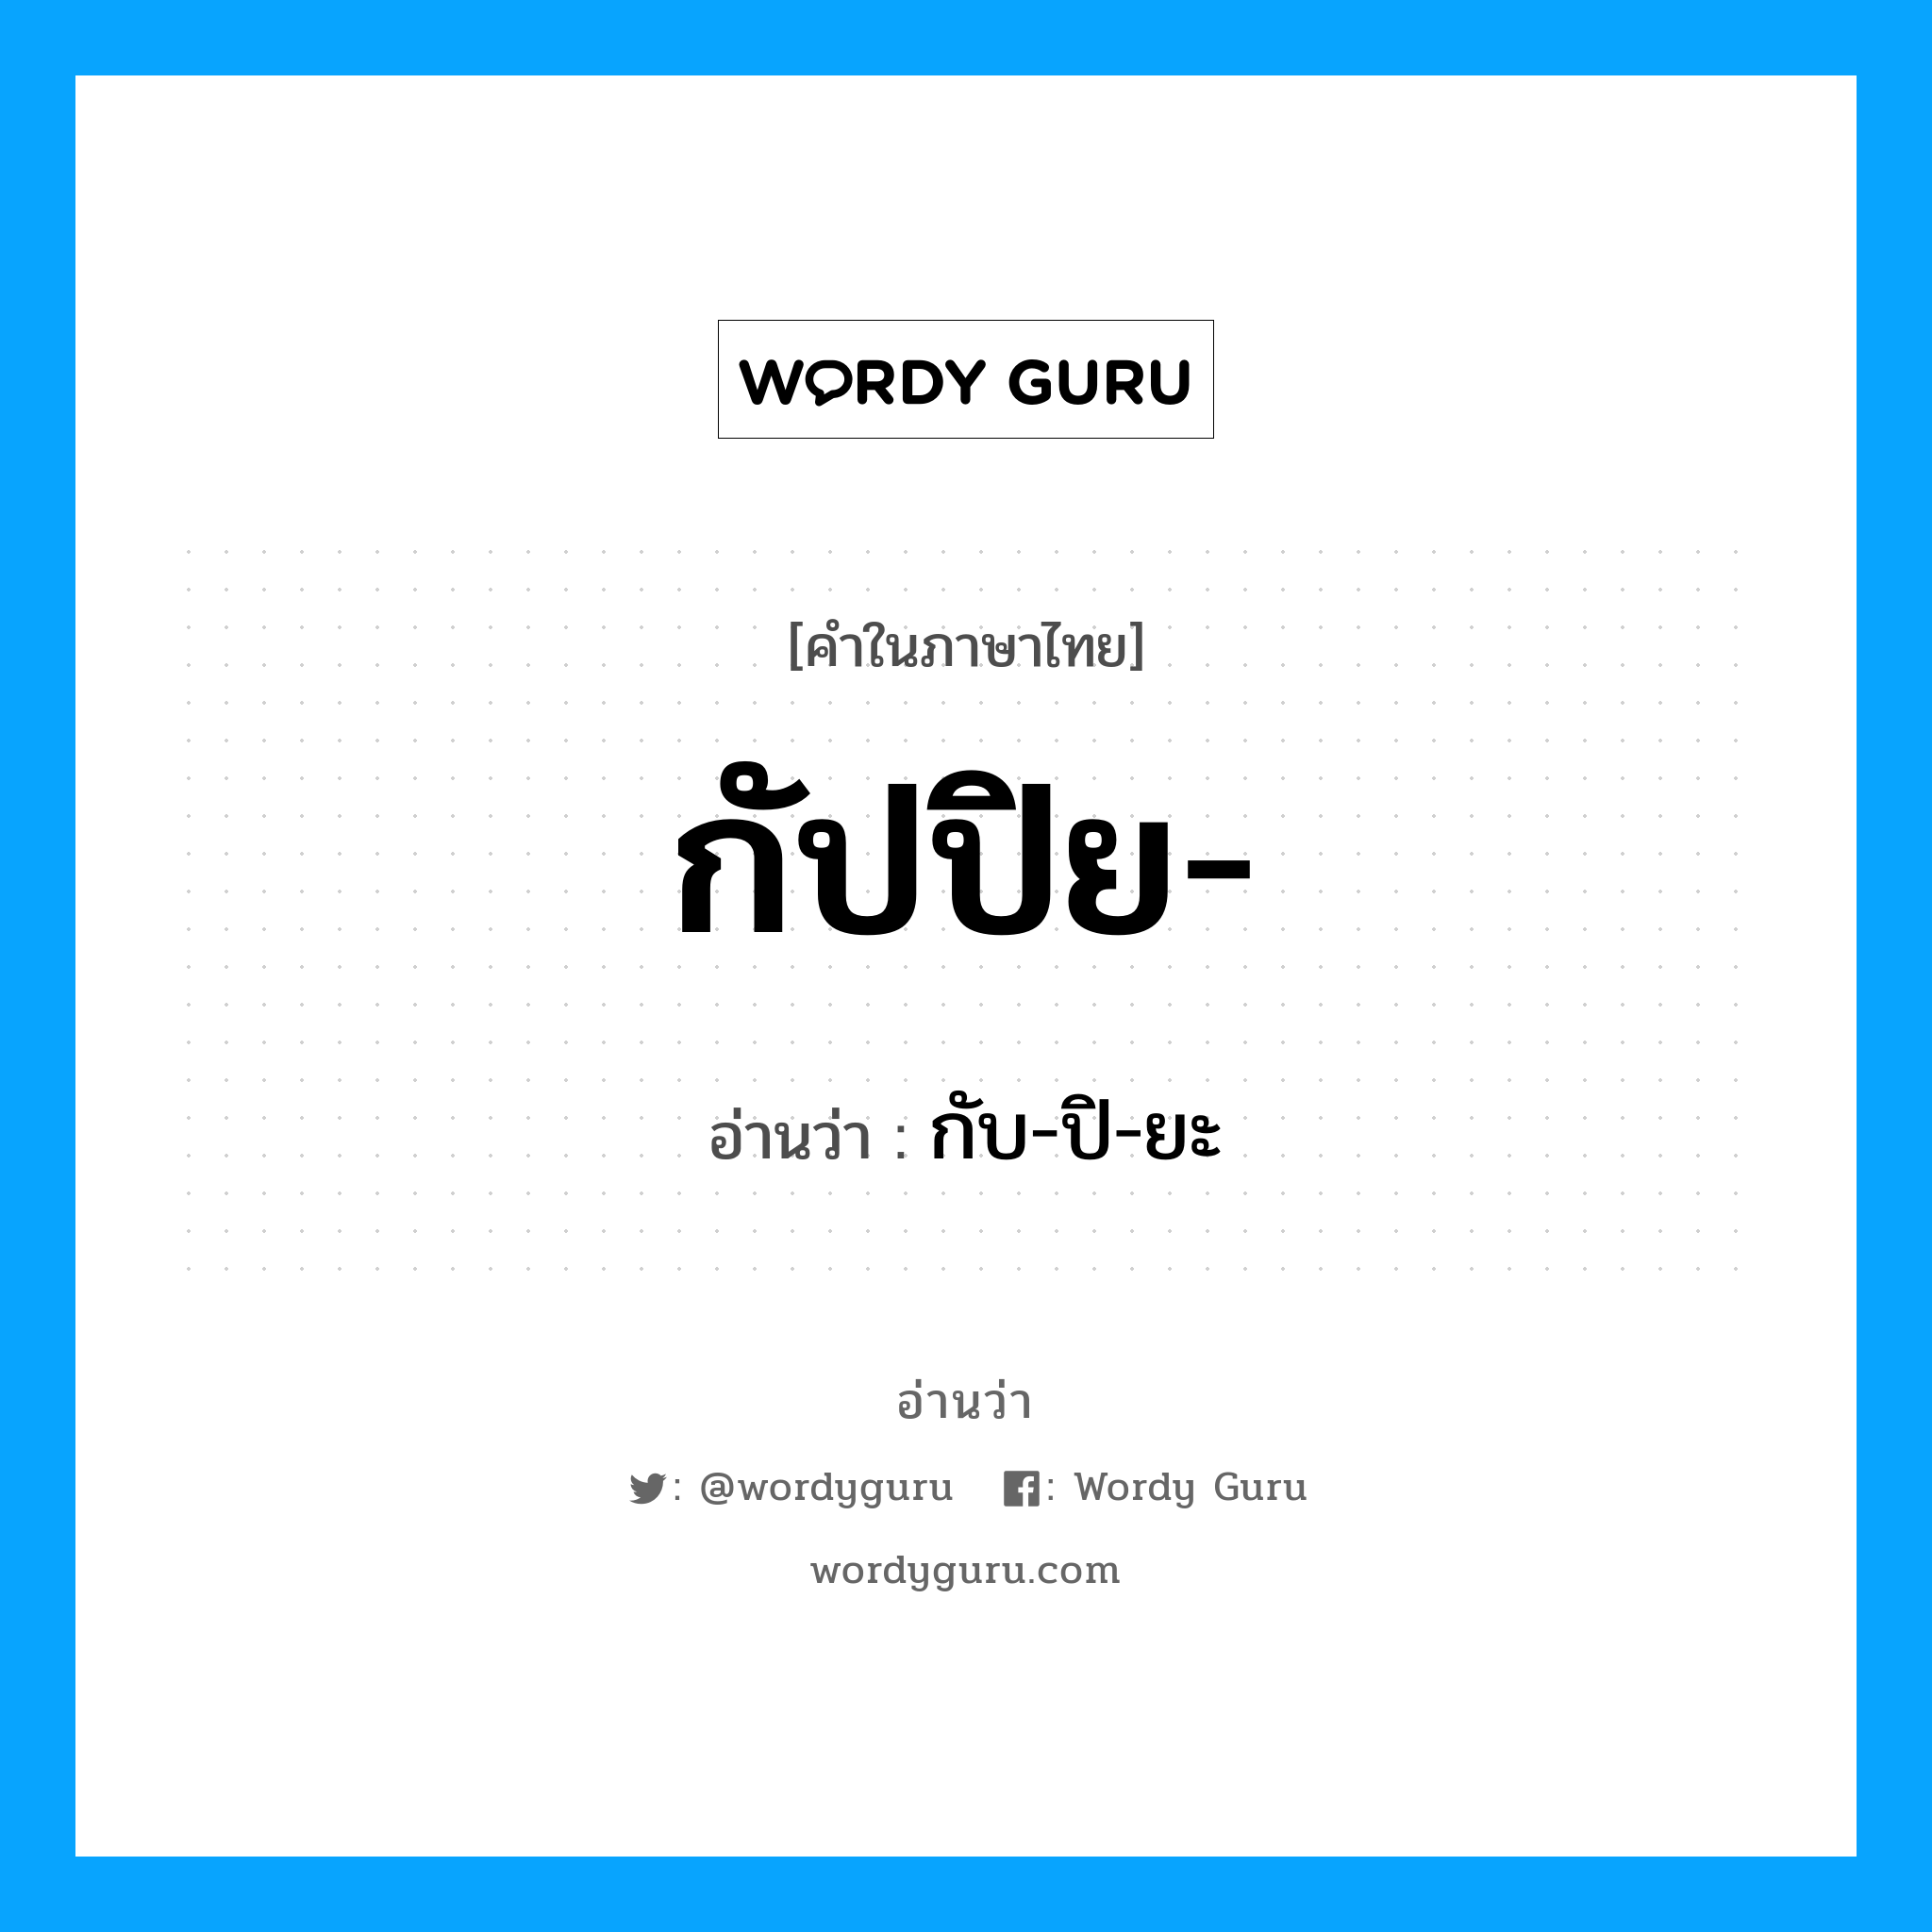 กับ-ปิ-ยะ เป็นคำอ่านของคำไหน?, คำในภาษาไทย กับ-ปิ-ยะ อ่านว่า กัปปิย-